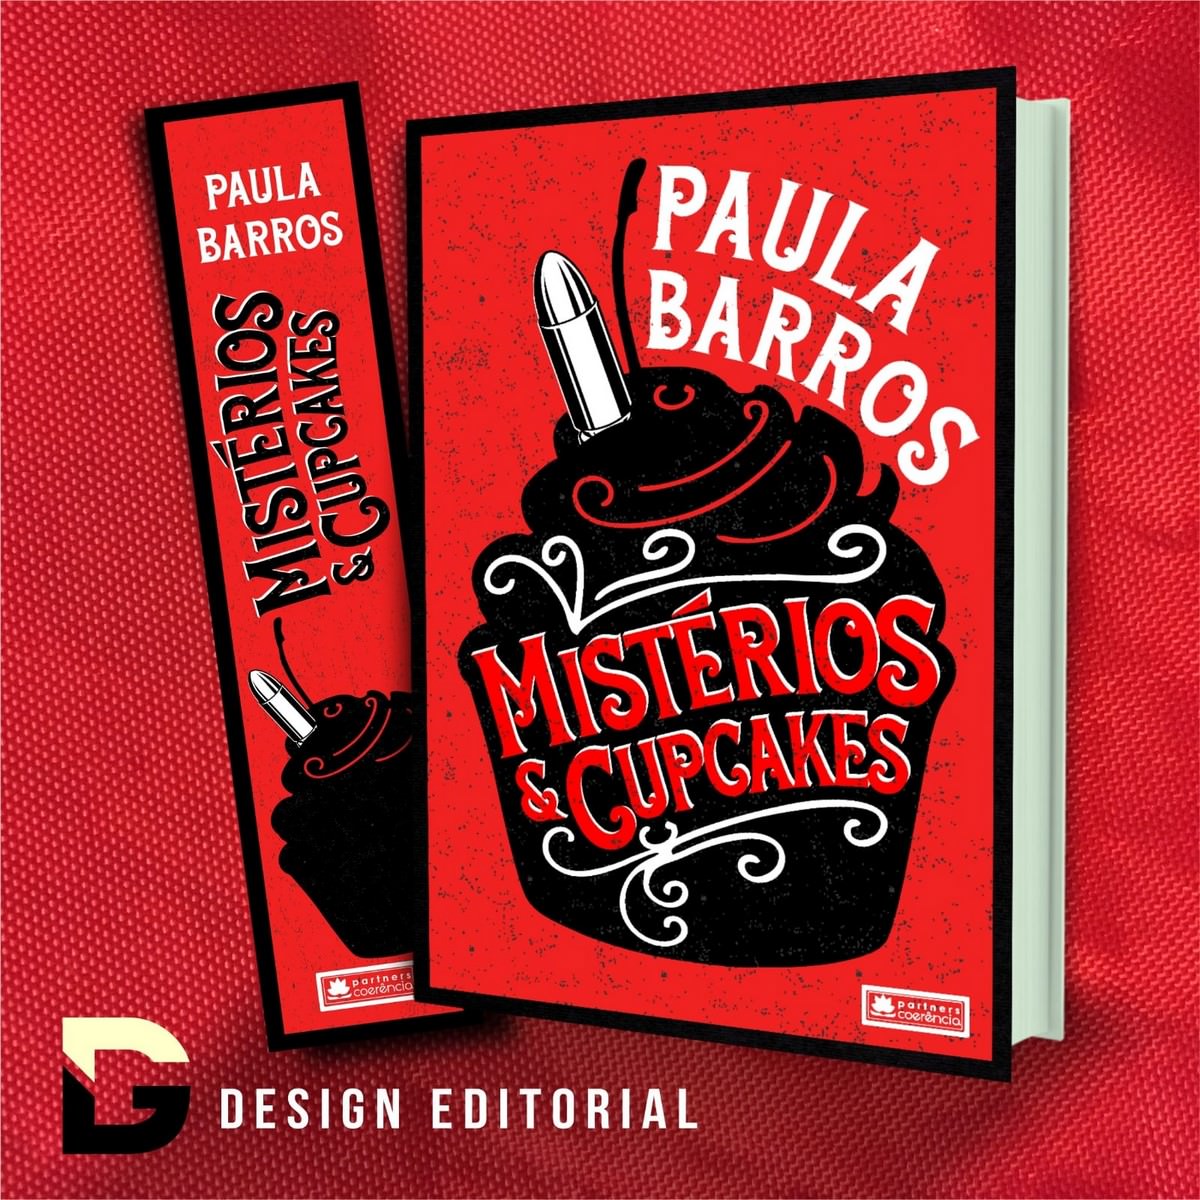 "Μυστήρια και κέικ", το ντεμπούτο βιβλίο του συγγραφέα Paula Barros, πανό. Αποκάλυψη.